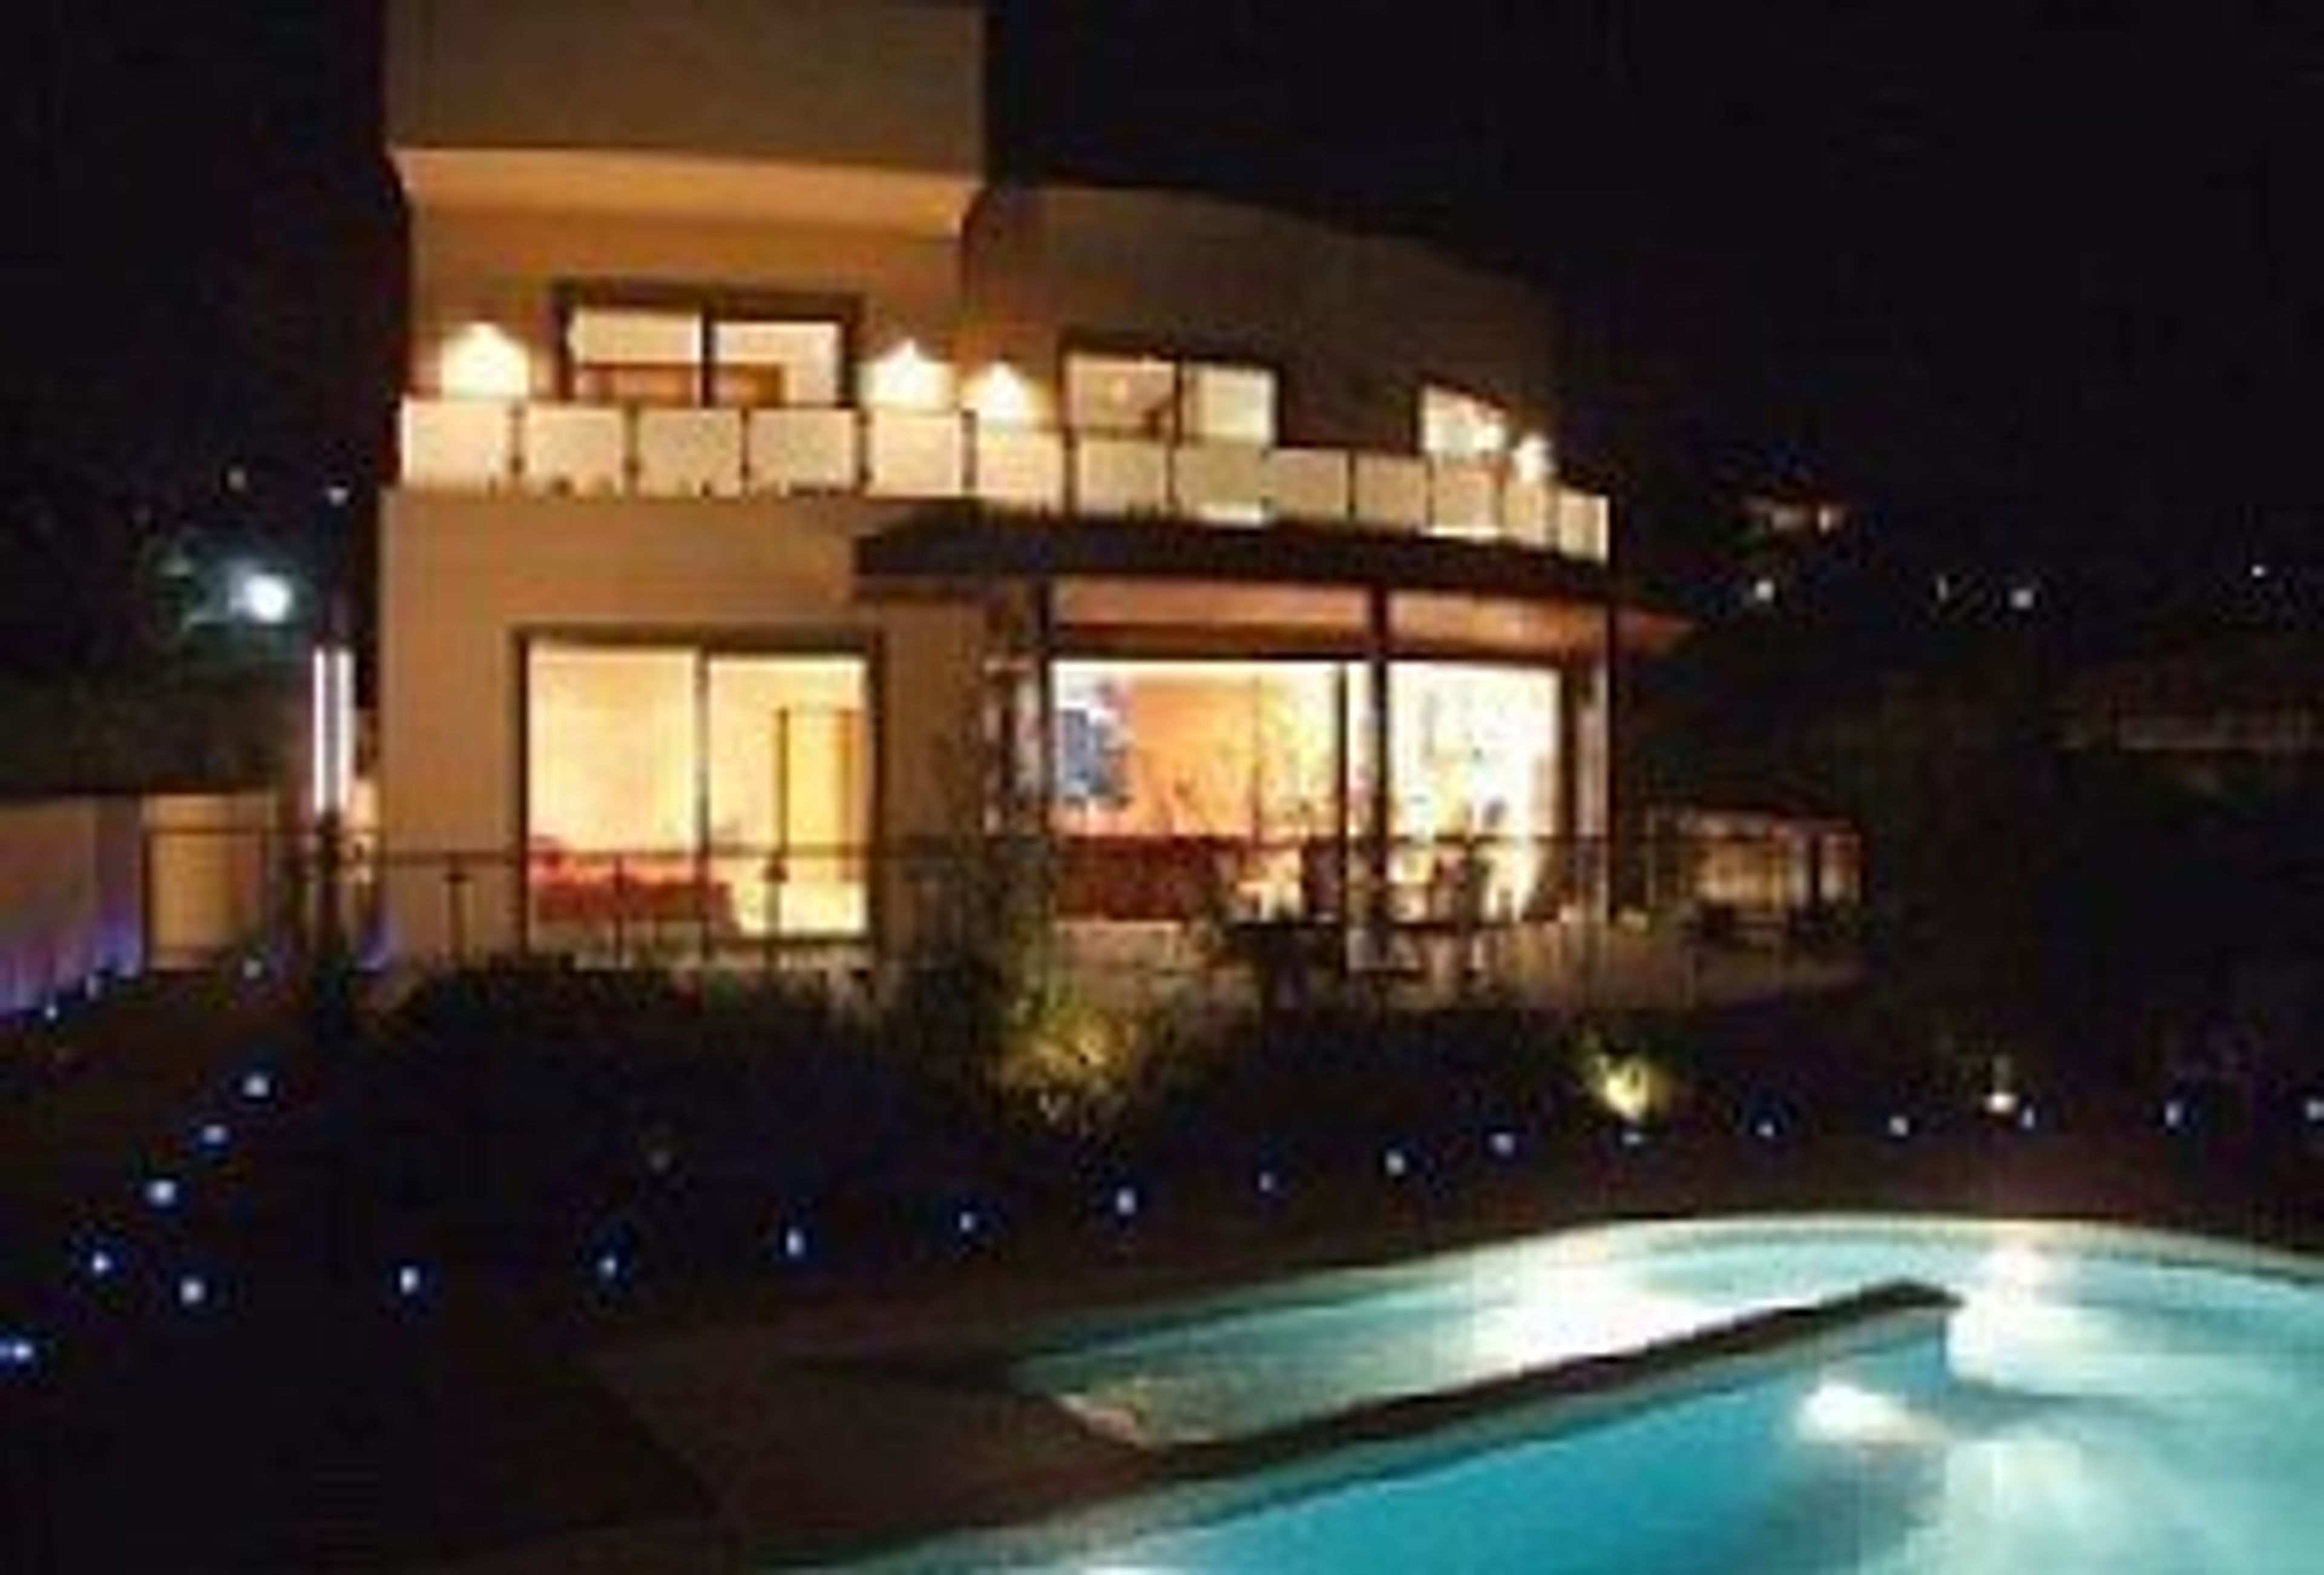 The villa and pool at night.